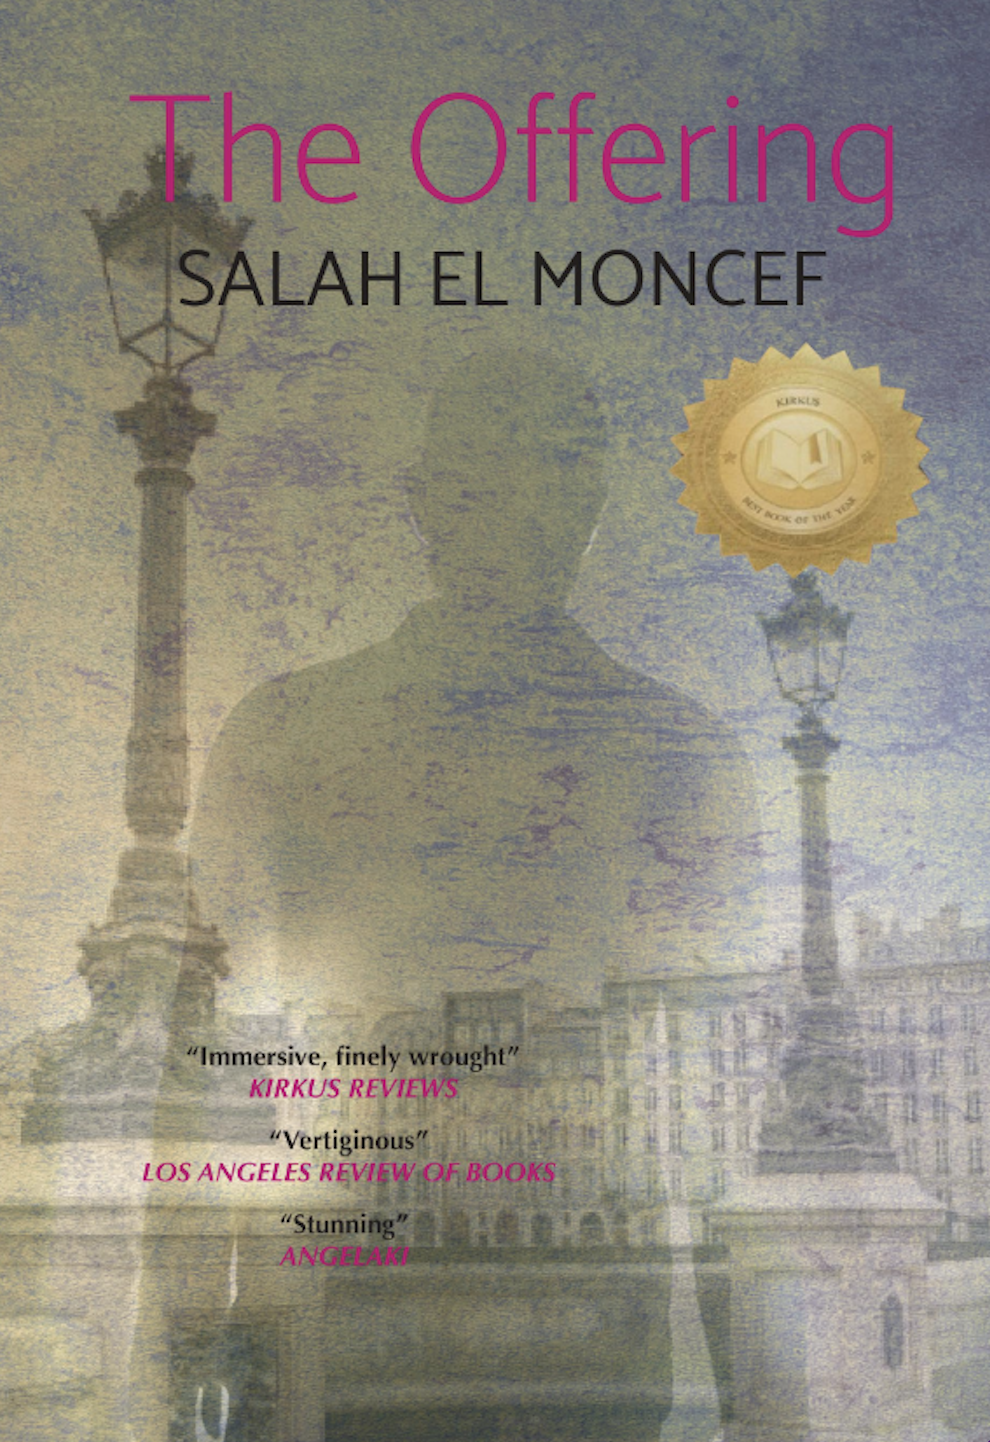 The Offering by Salah El Moncef